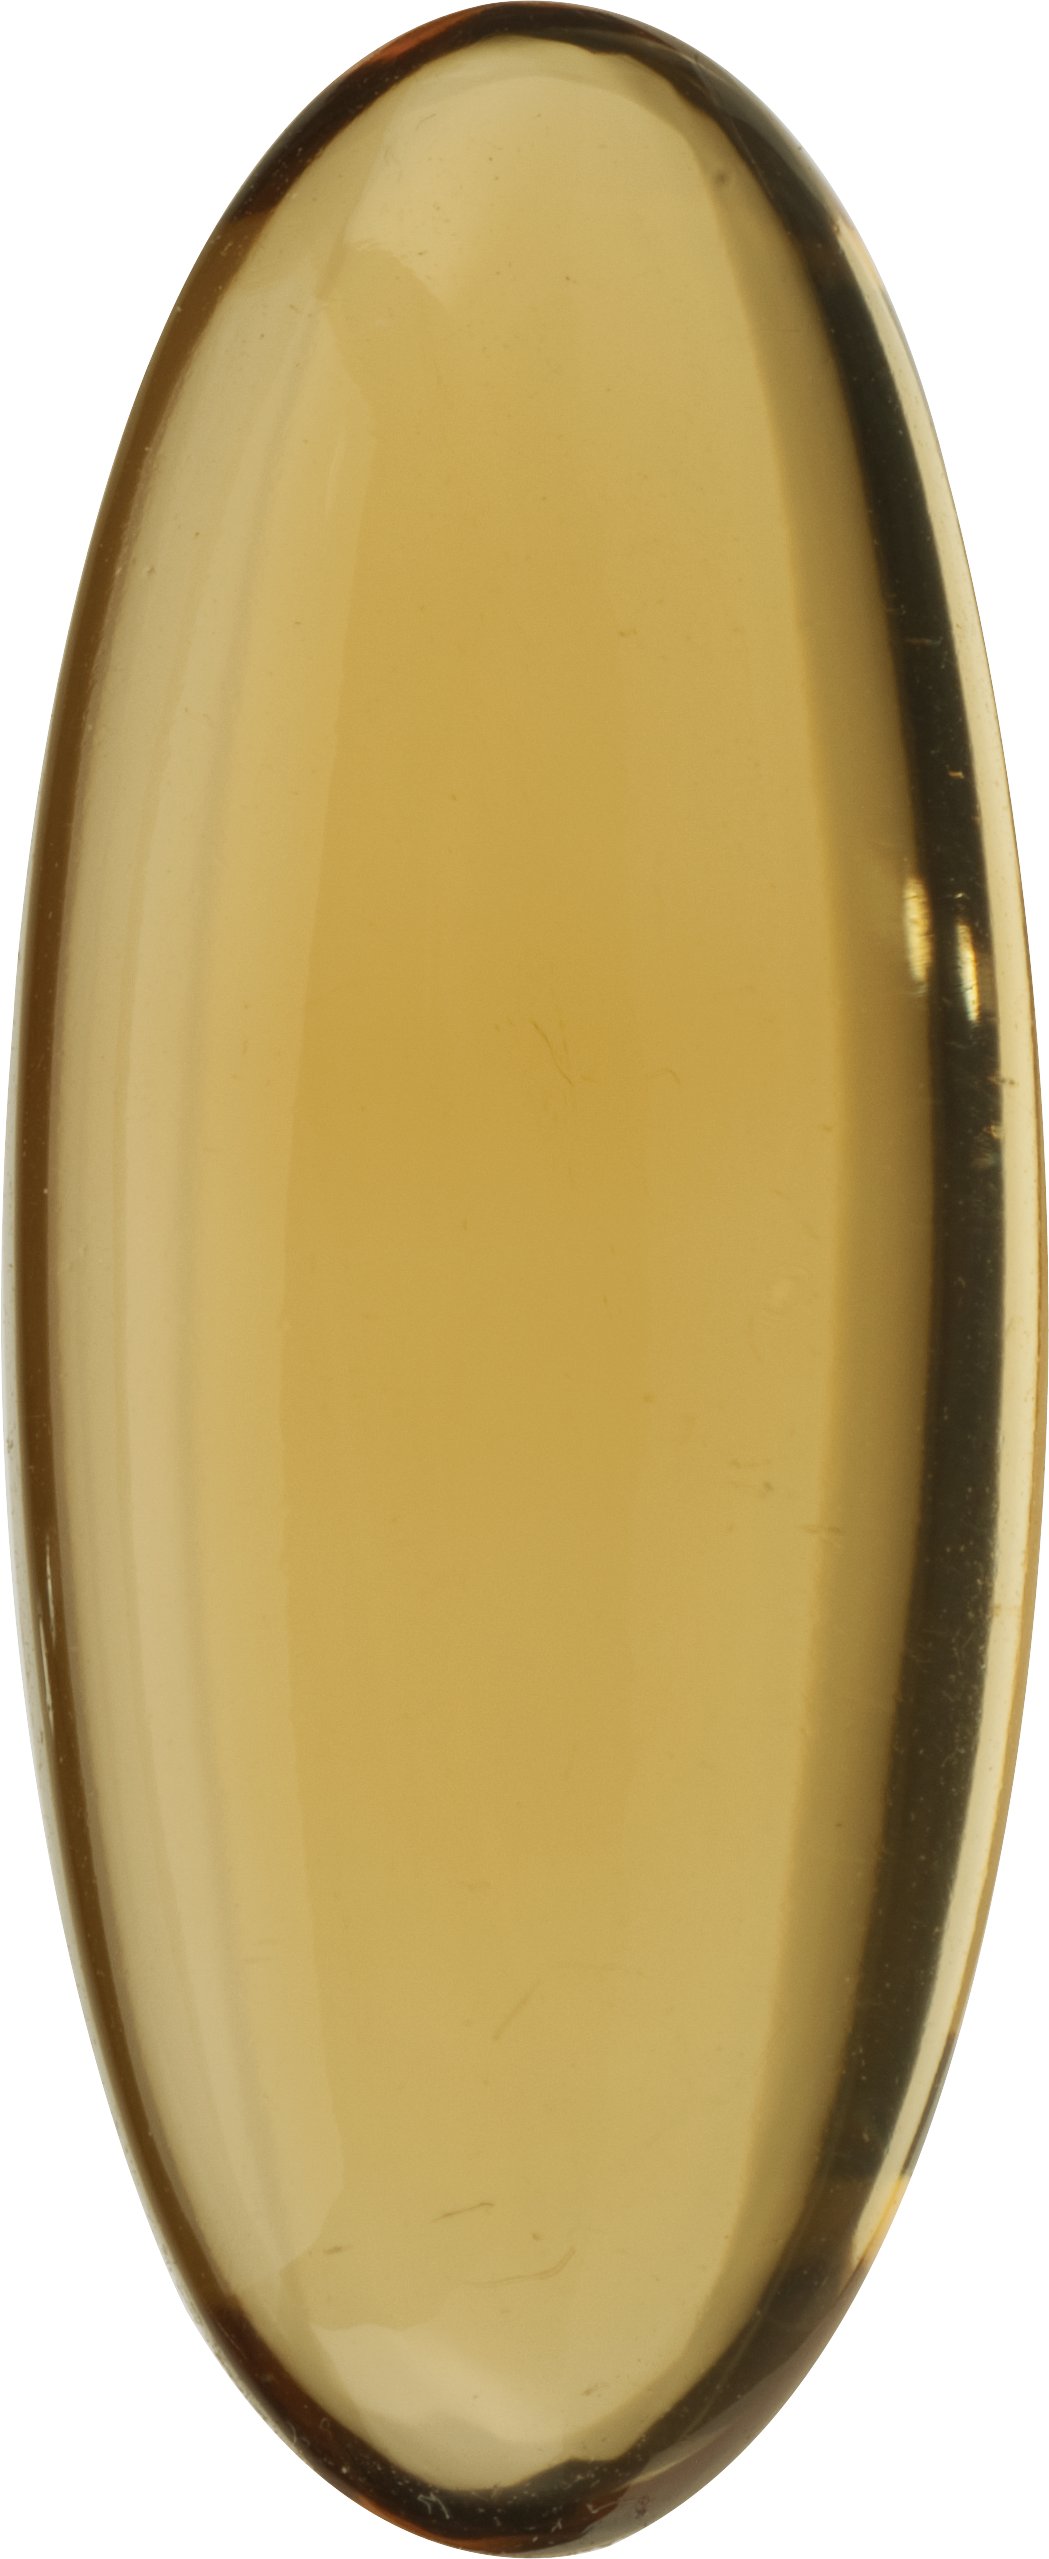 Oval Natural Cabochon Honey Quartz